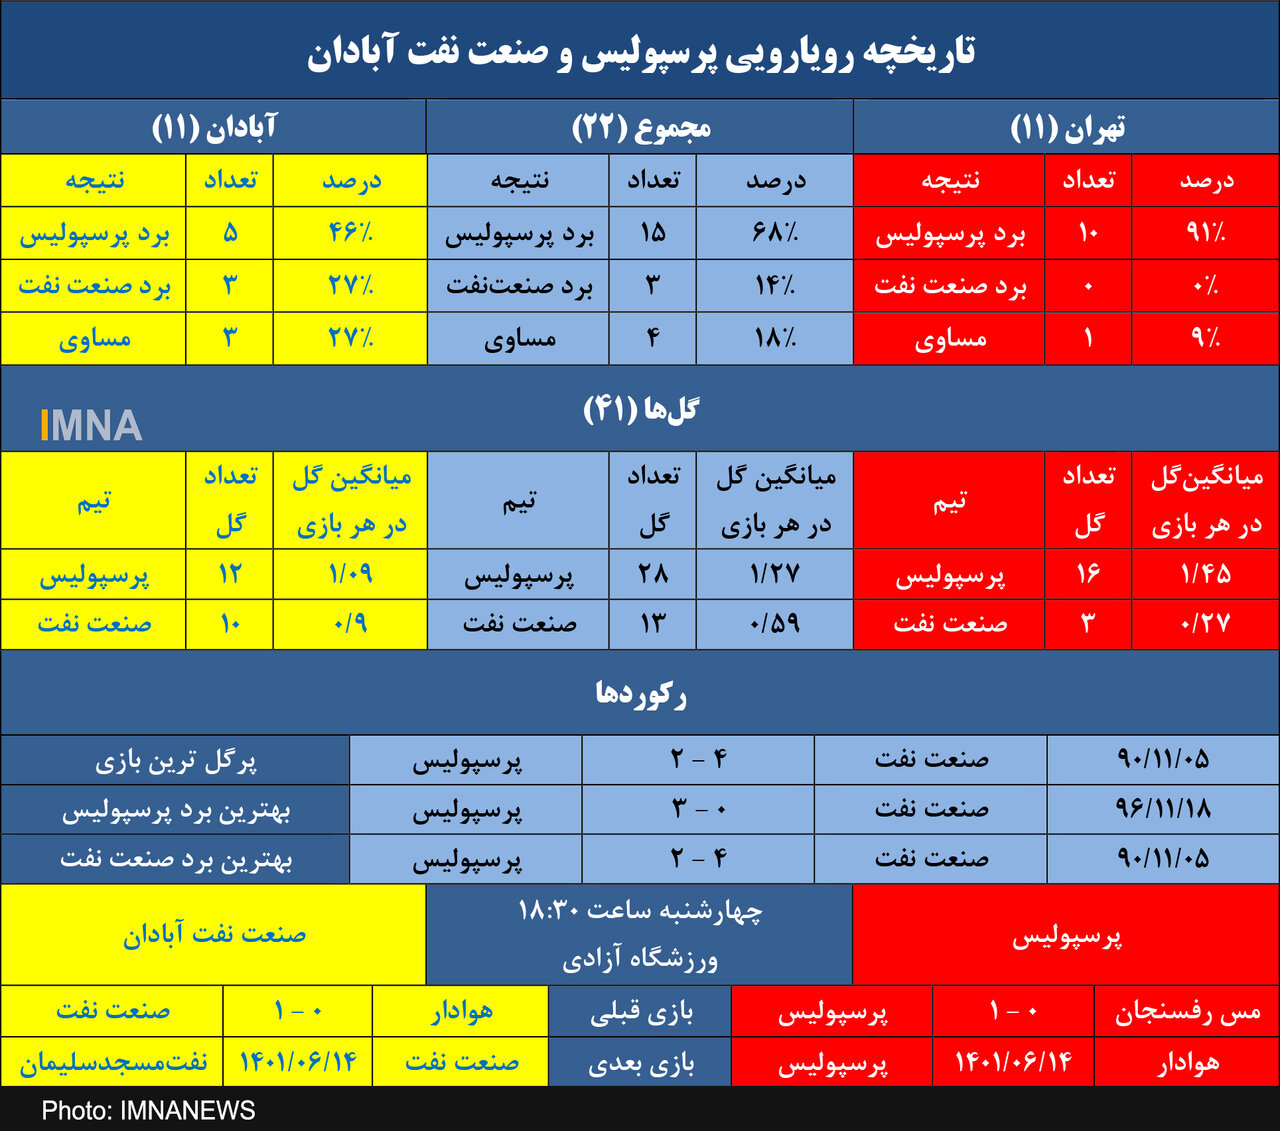 طلسم ۳۵۳۶ روزه صنعت نفت برای گلزنی مقابل پرسپولیس در تهران! + جدول